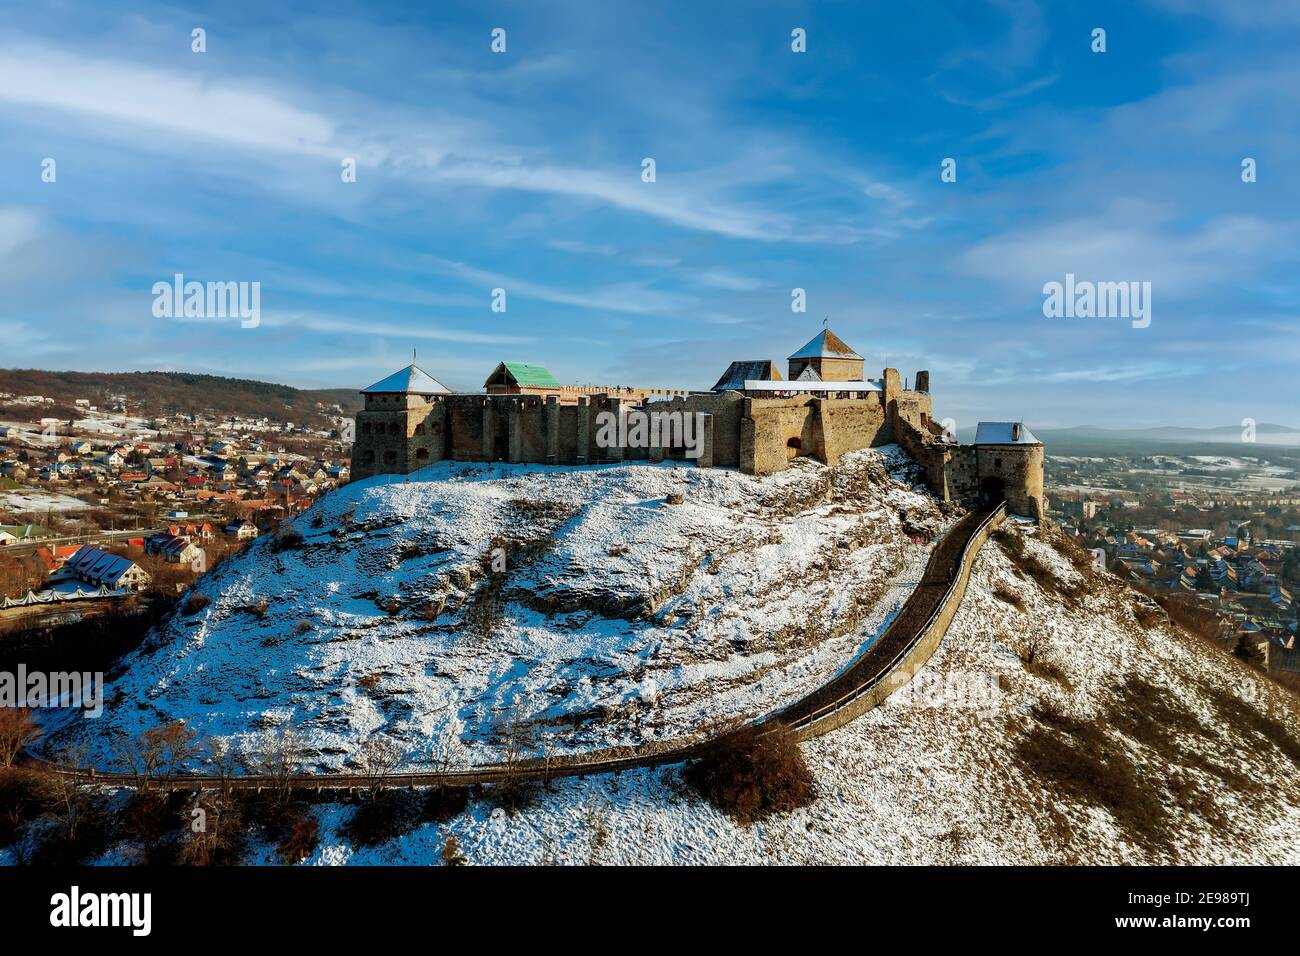 Castello di Sumeg in Ungheria. Museo storico delle rovine del forte nella regione dell'alta balaton. Antica fortezza con splendida vista panoramica. Foto Stock